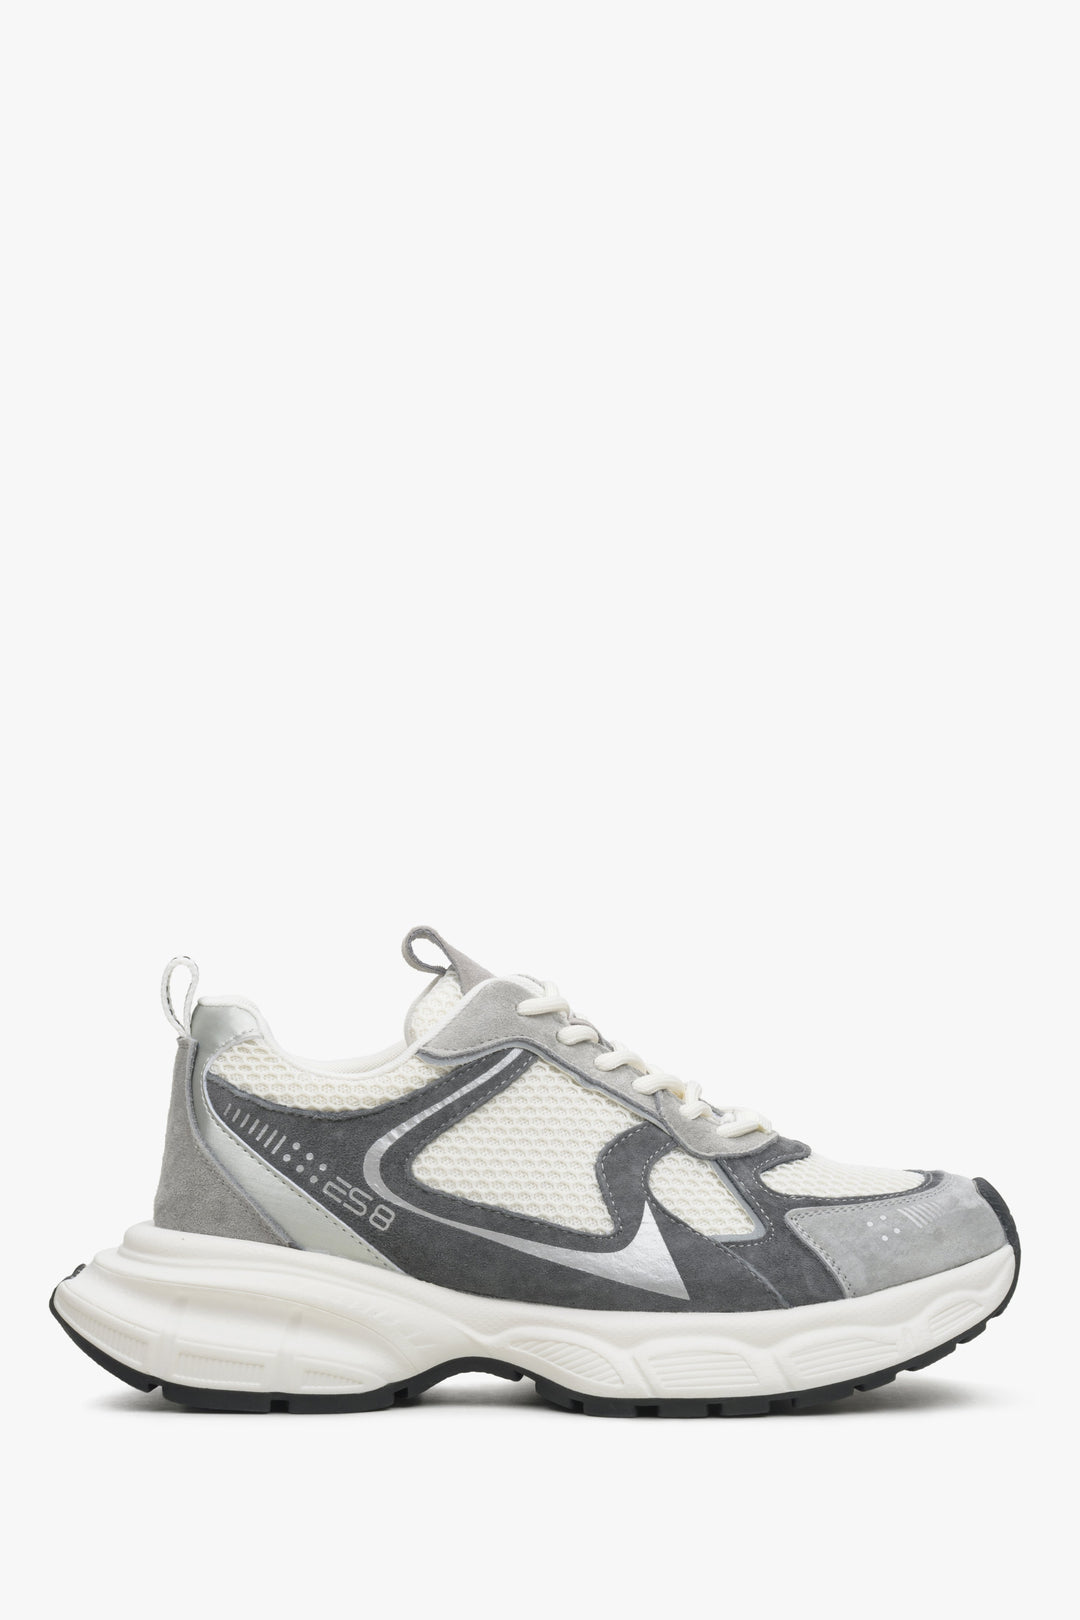 Szaro-białe sneakersy damskie na elastycznej podeszwie ES 8 ER00114600